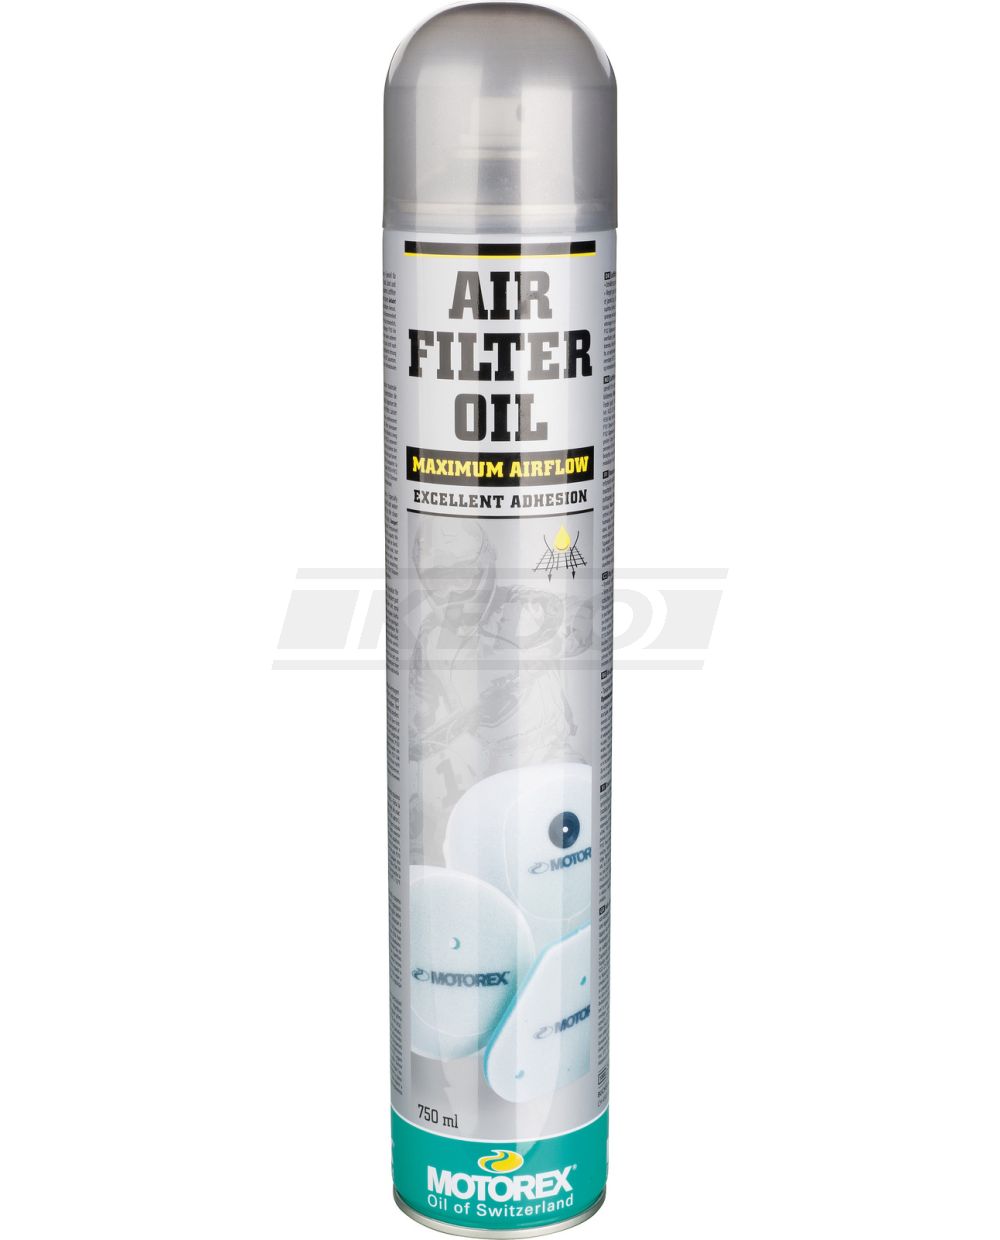 K&N Luftfilter Reinigungsset Spray